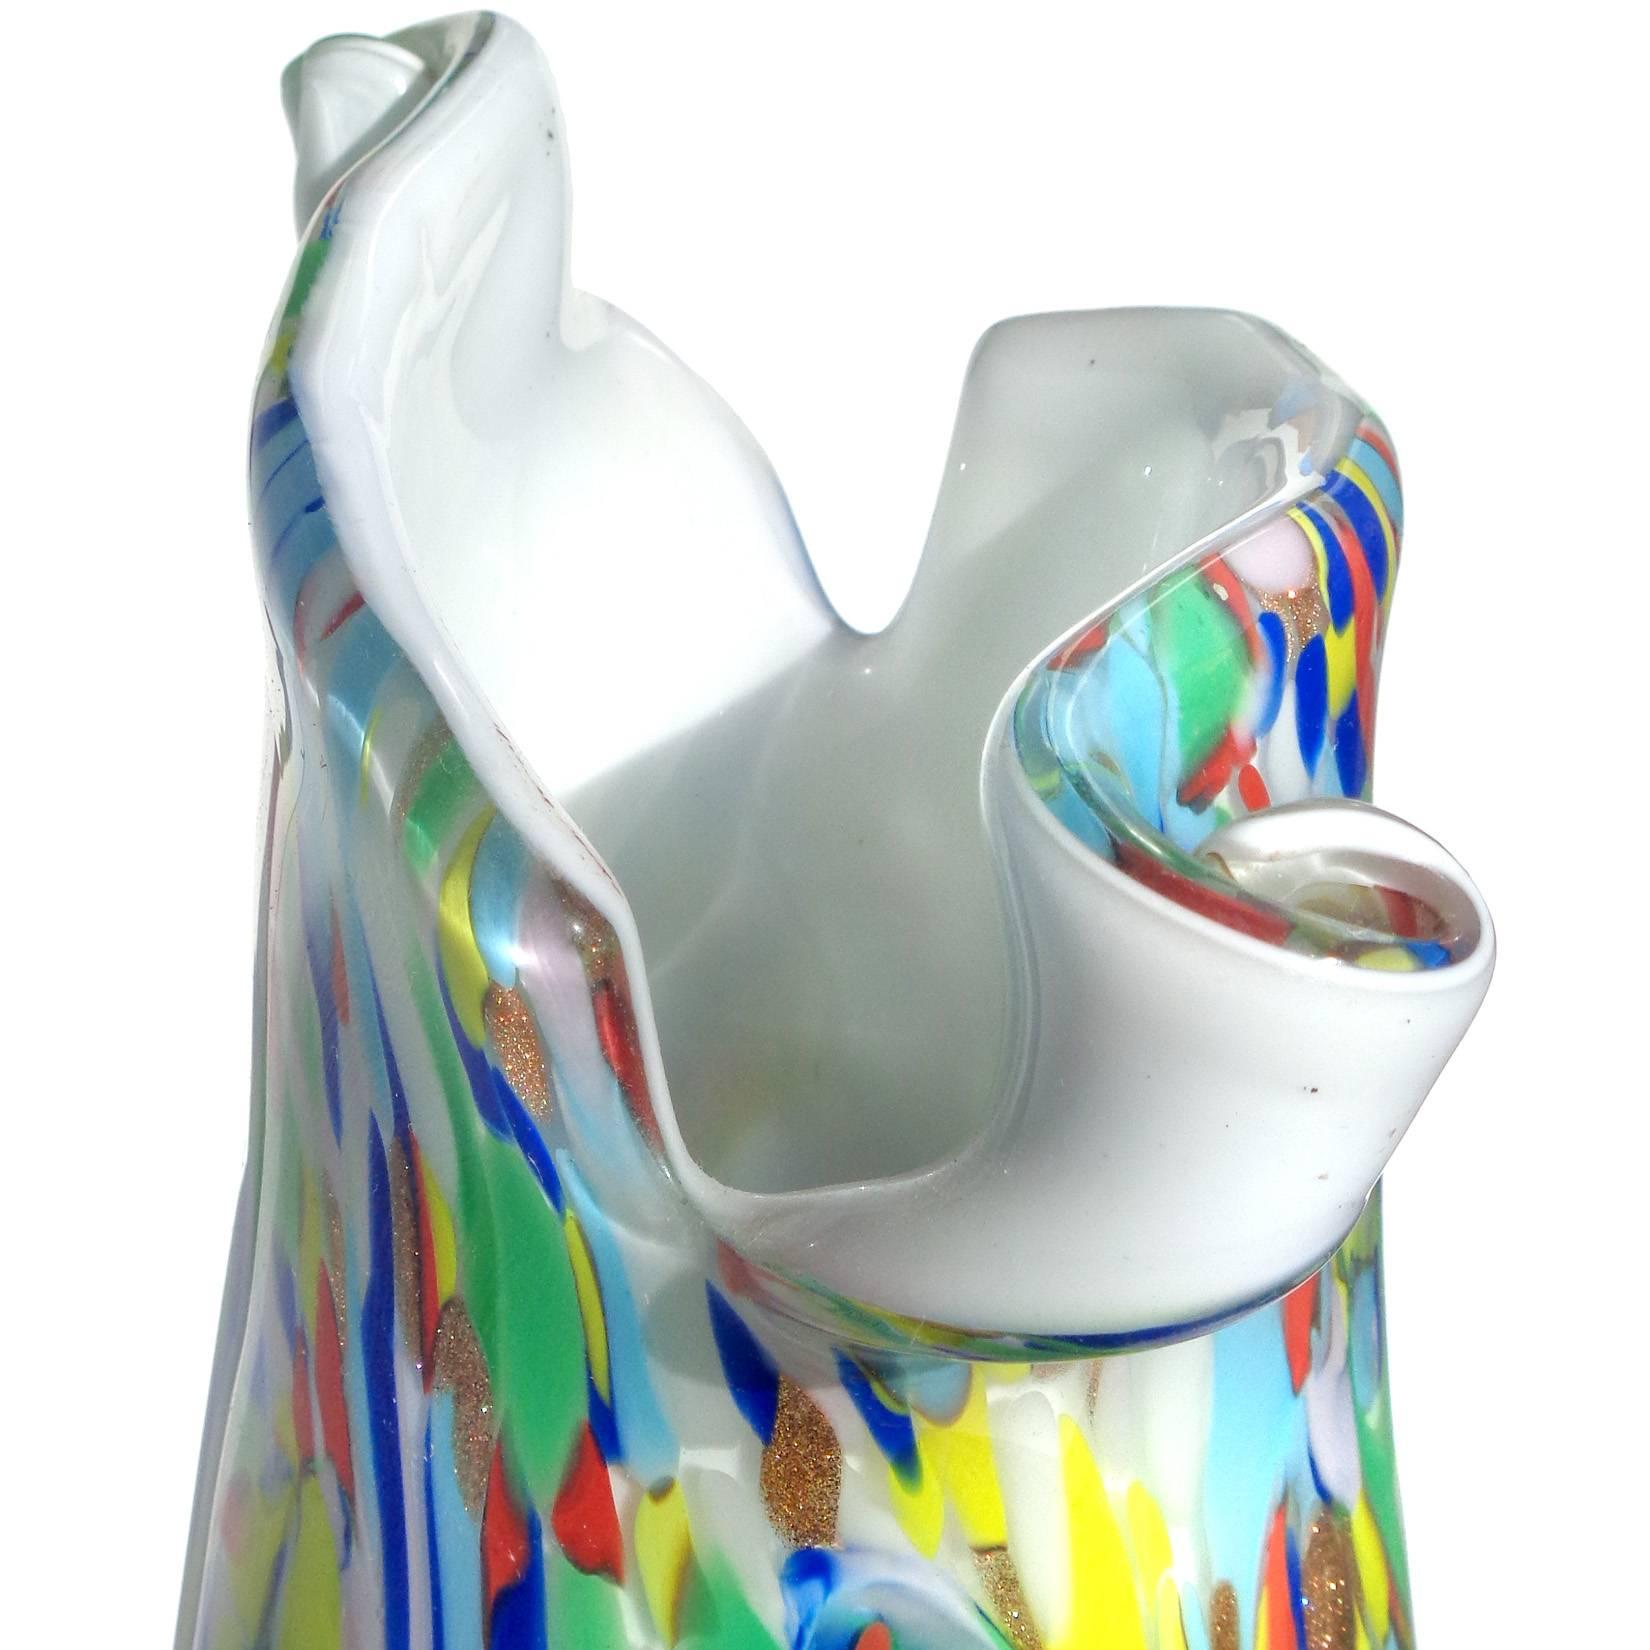 Schöne große Murano mundgeblasenen Regenbogen Farbe wirbelt über weiße italienische Kunst Glas Blumenvase mit Schere geschnitten Rand. Dokumentiert für die Firma Fratelli Toso, in der Ausführung 